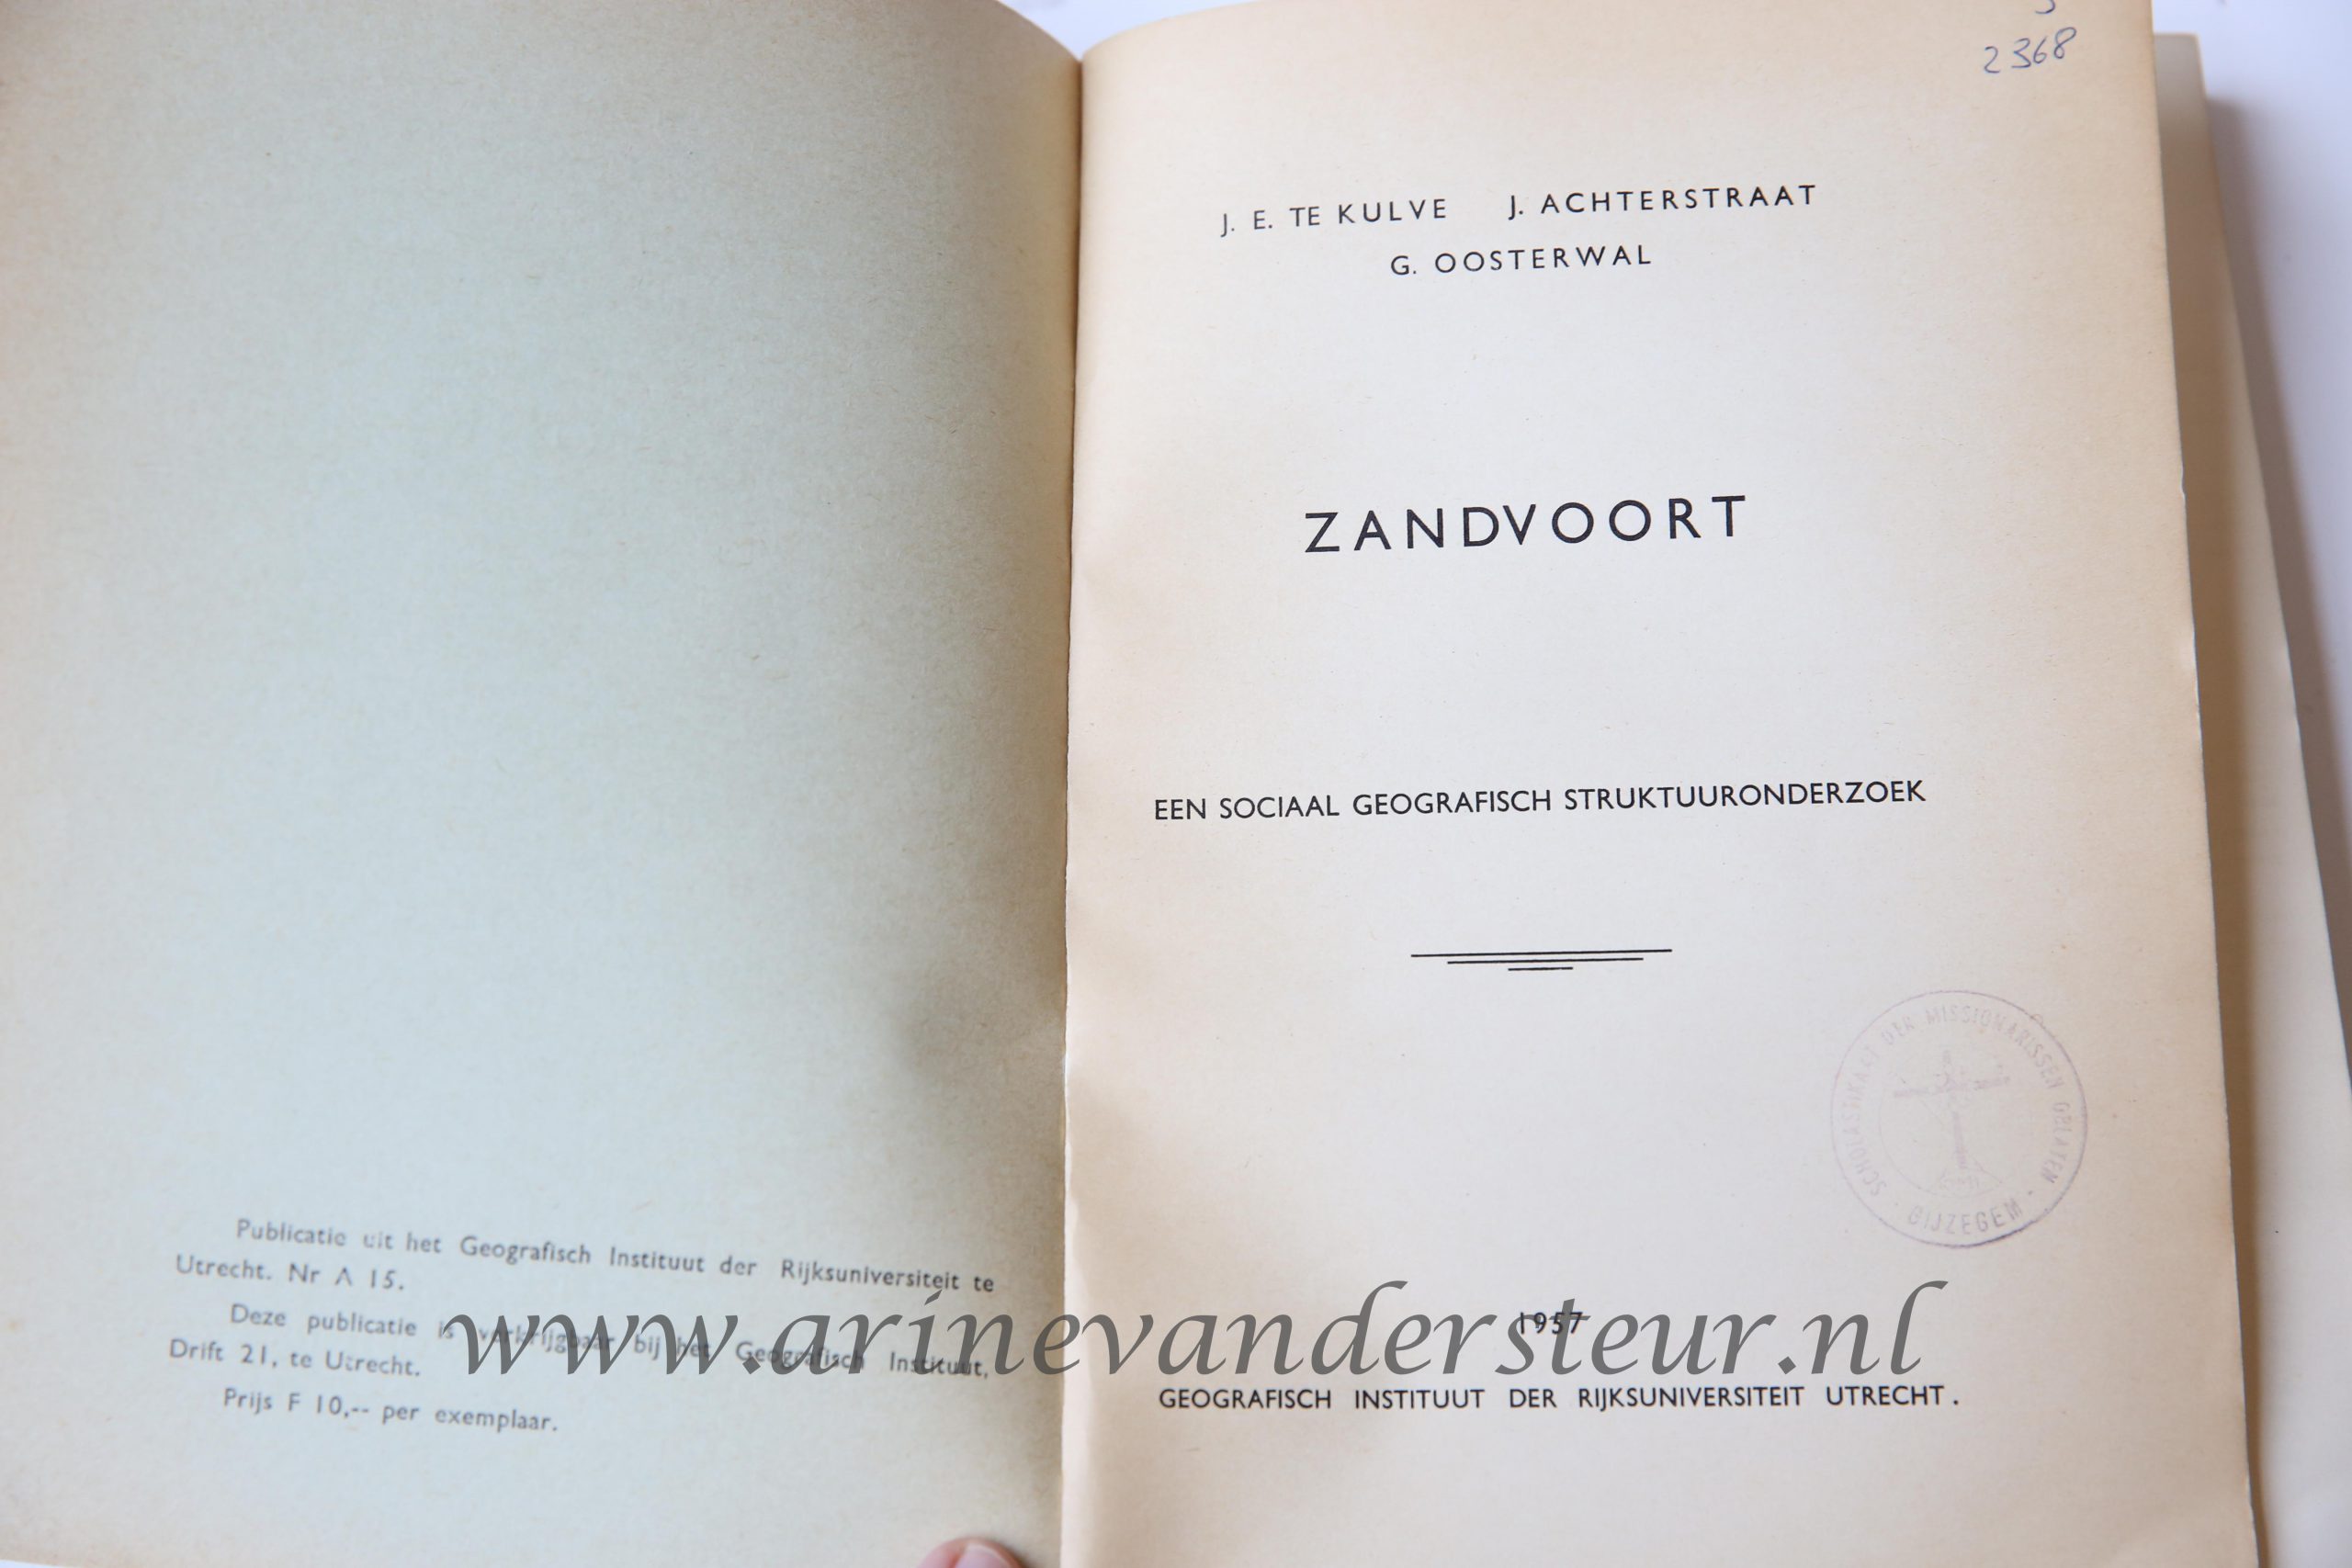 Zandvoort. Een sociaal geografisch struktuuronderzoek, Utrecht Geografisch Instituut der Rijksuniversiteit Utrecht 1957, 307 pp. Text in Dutch.